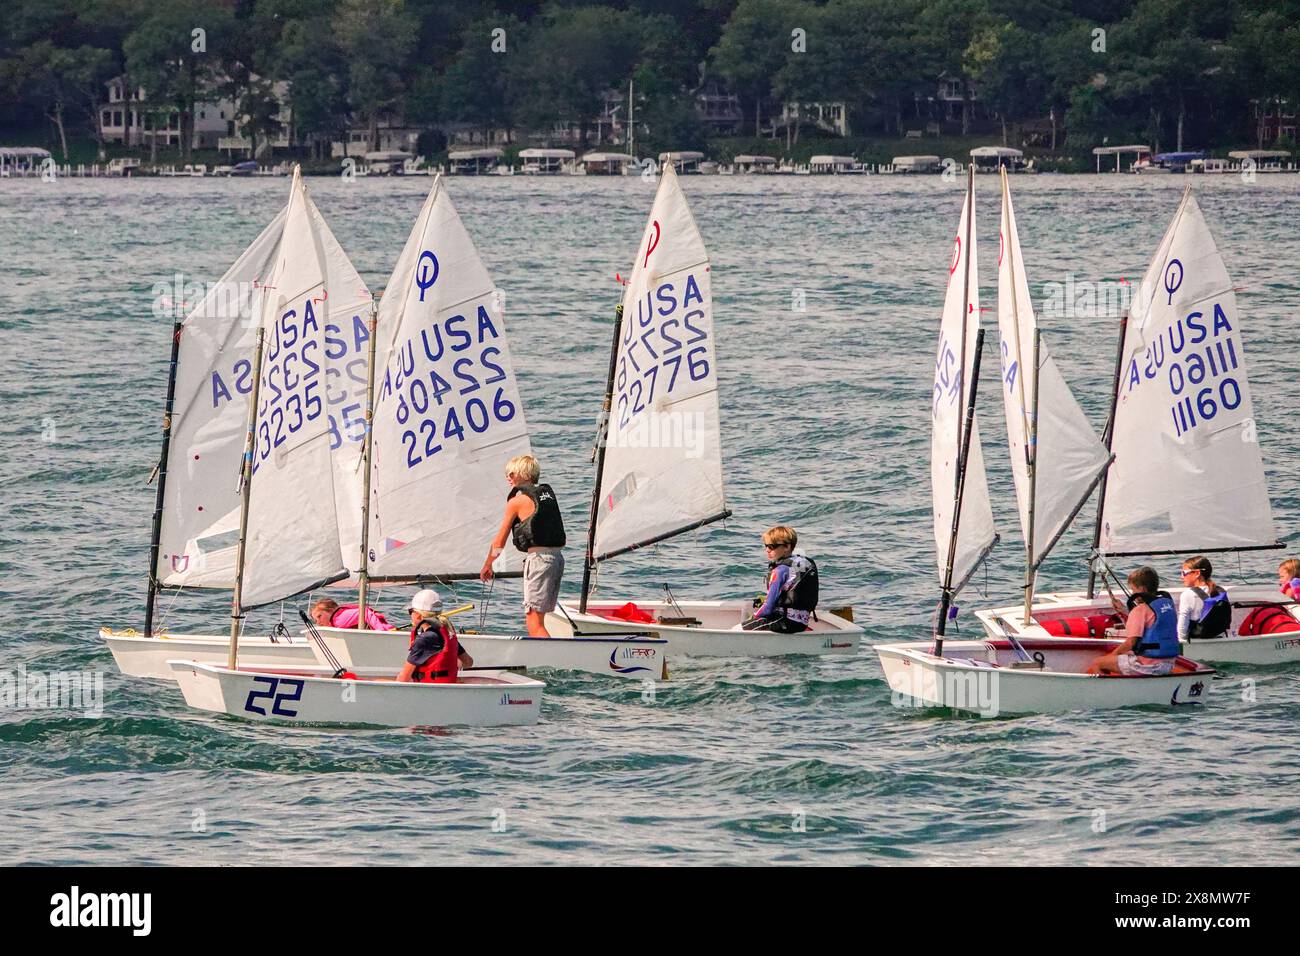 Les canots à voile s'affrontent sur le lac Léman, Wisconsin. Le lac Léman est une destination de villégiature populaire pour les riches Chicagoans pour avoir des résidences secondaires et est surnommé le «Newport de l'Ouest». Banque D'Images